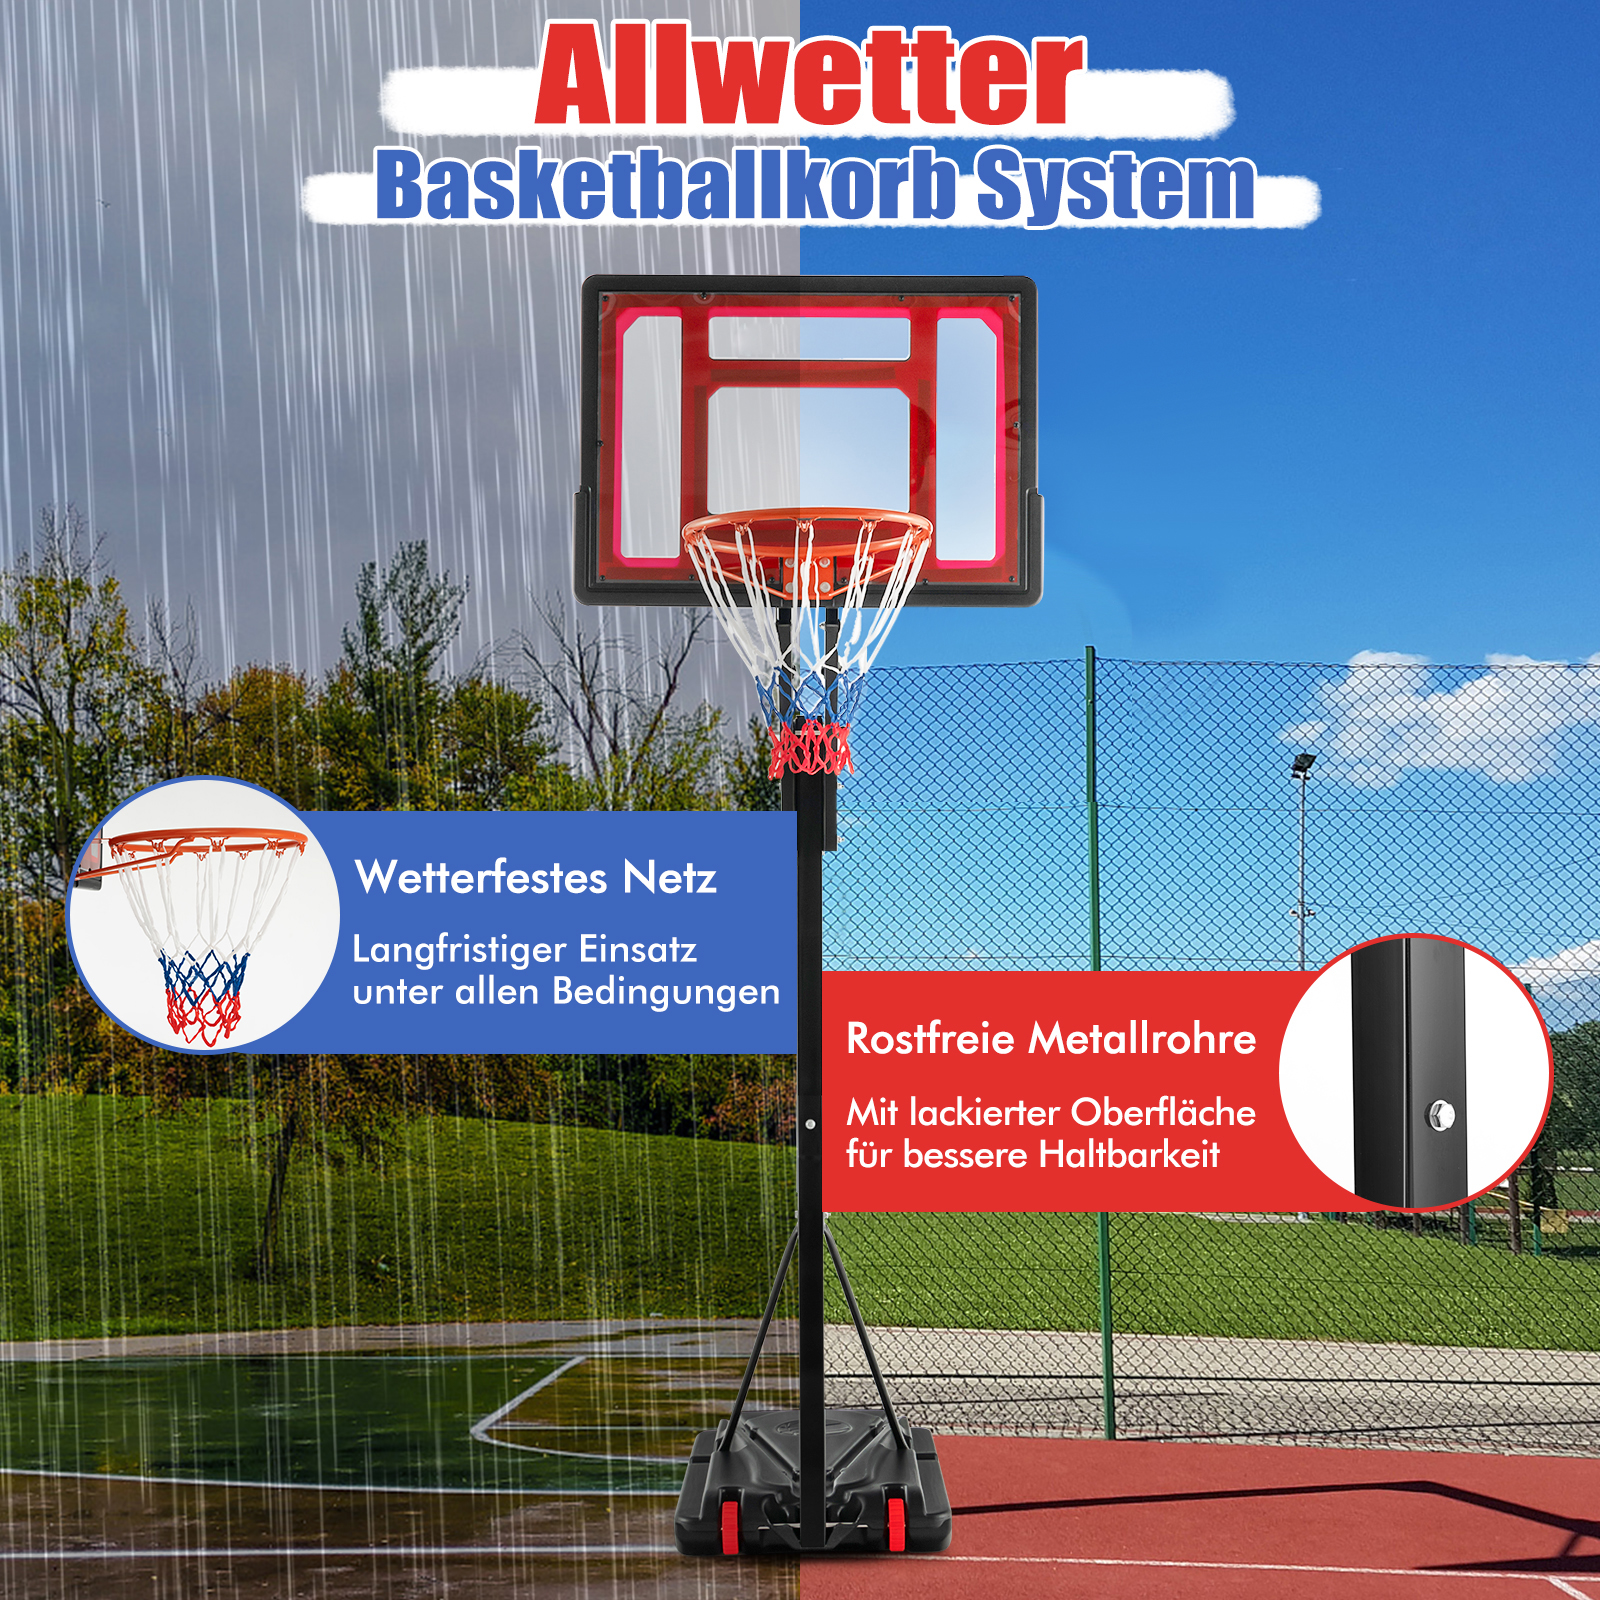 COSTWAY Basketballständer 105-260 cm höhenverstellbar Gartenspielzeug, Schwarz